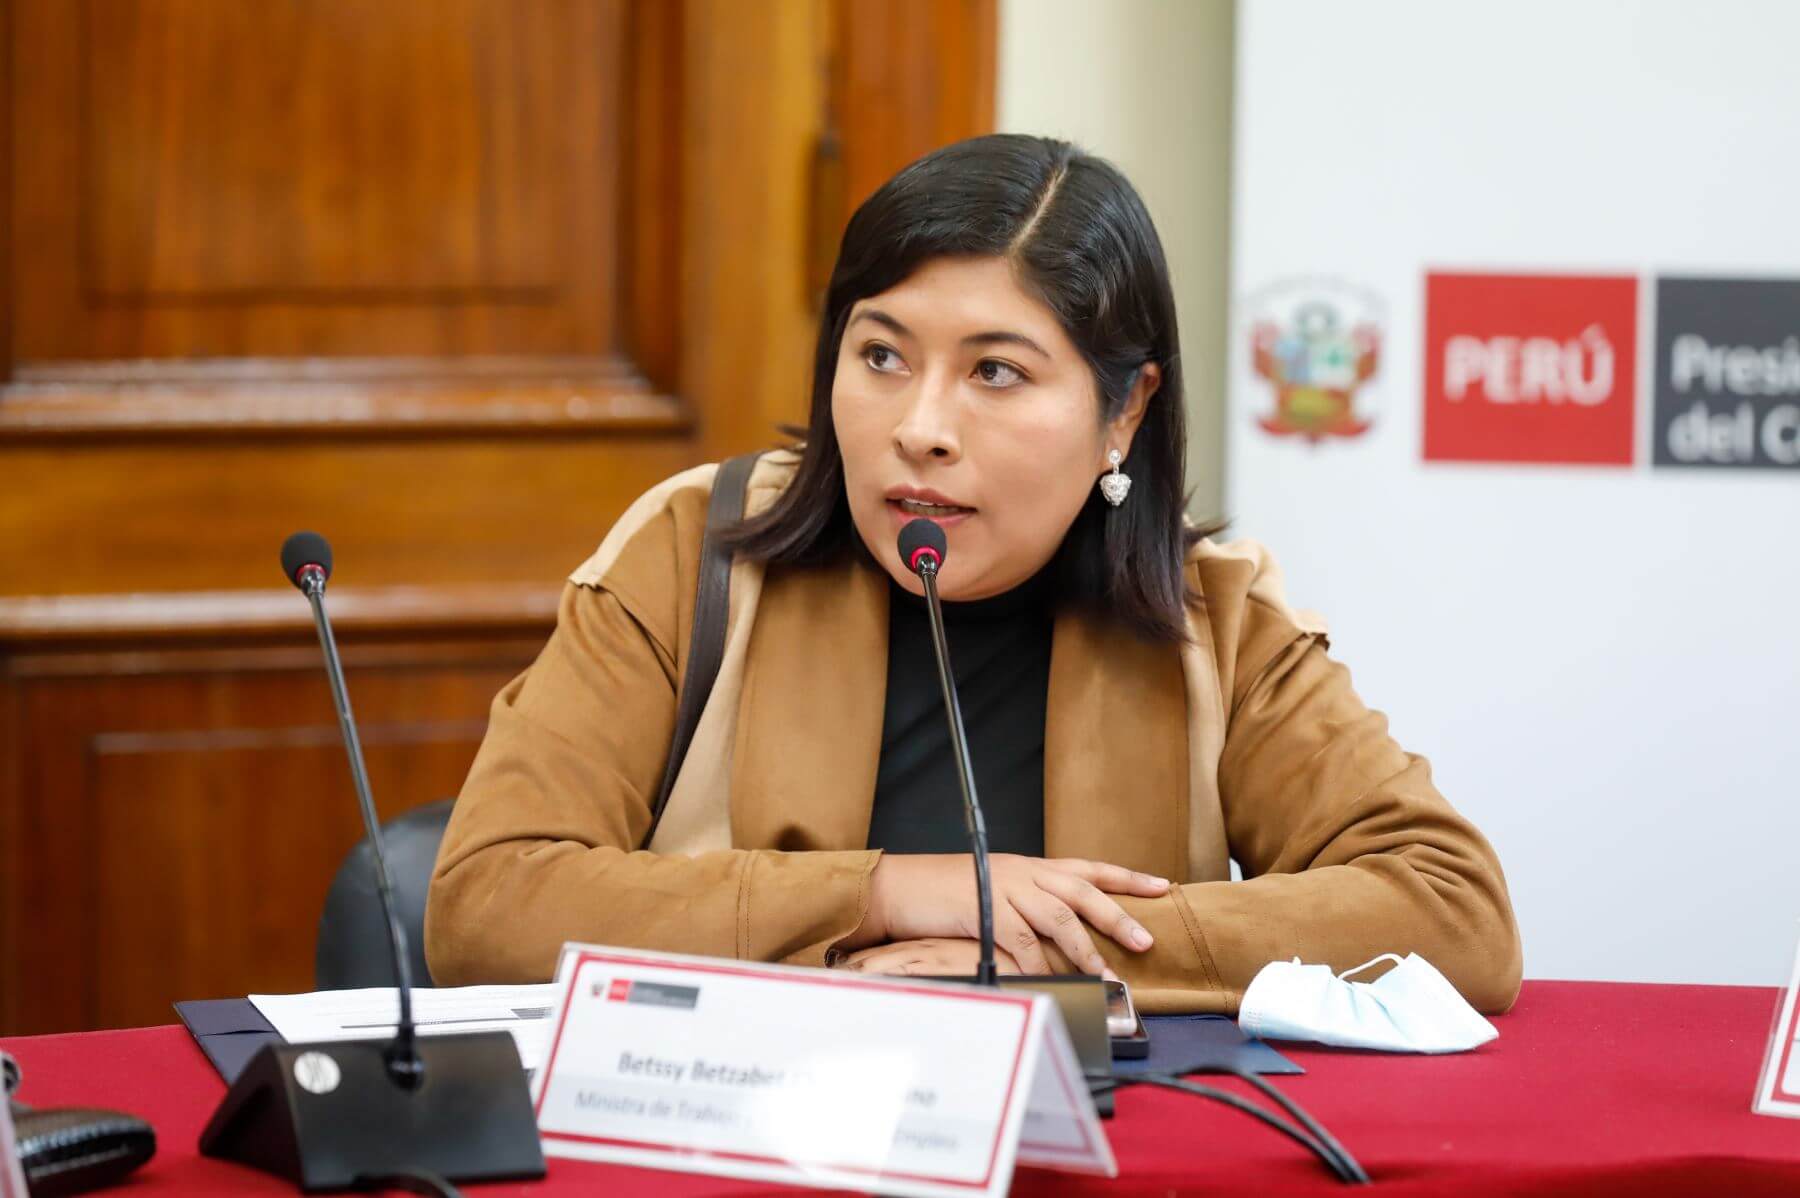 Betssy Chávez: Declara sobre baja aprobación del Congreso